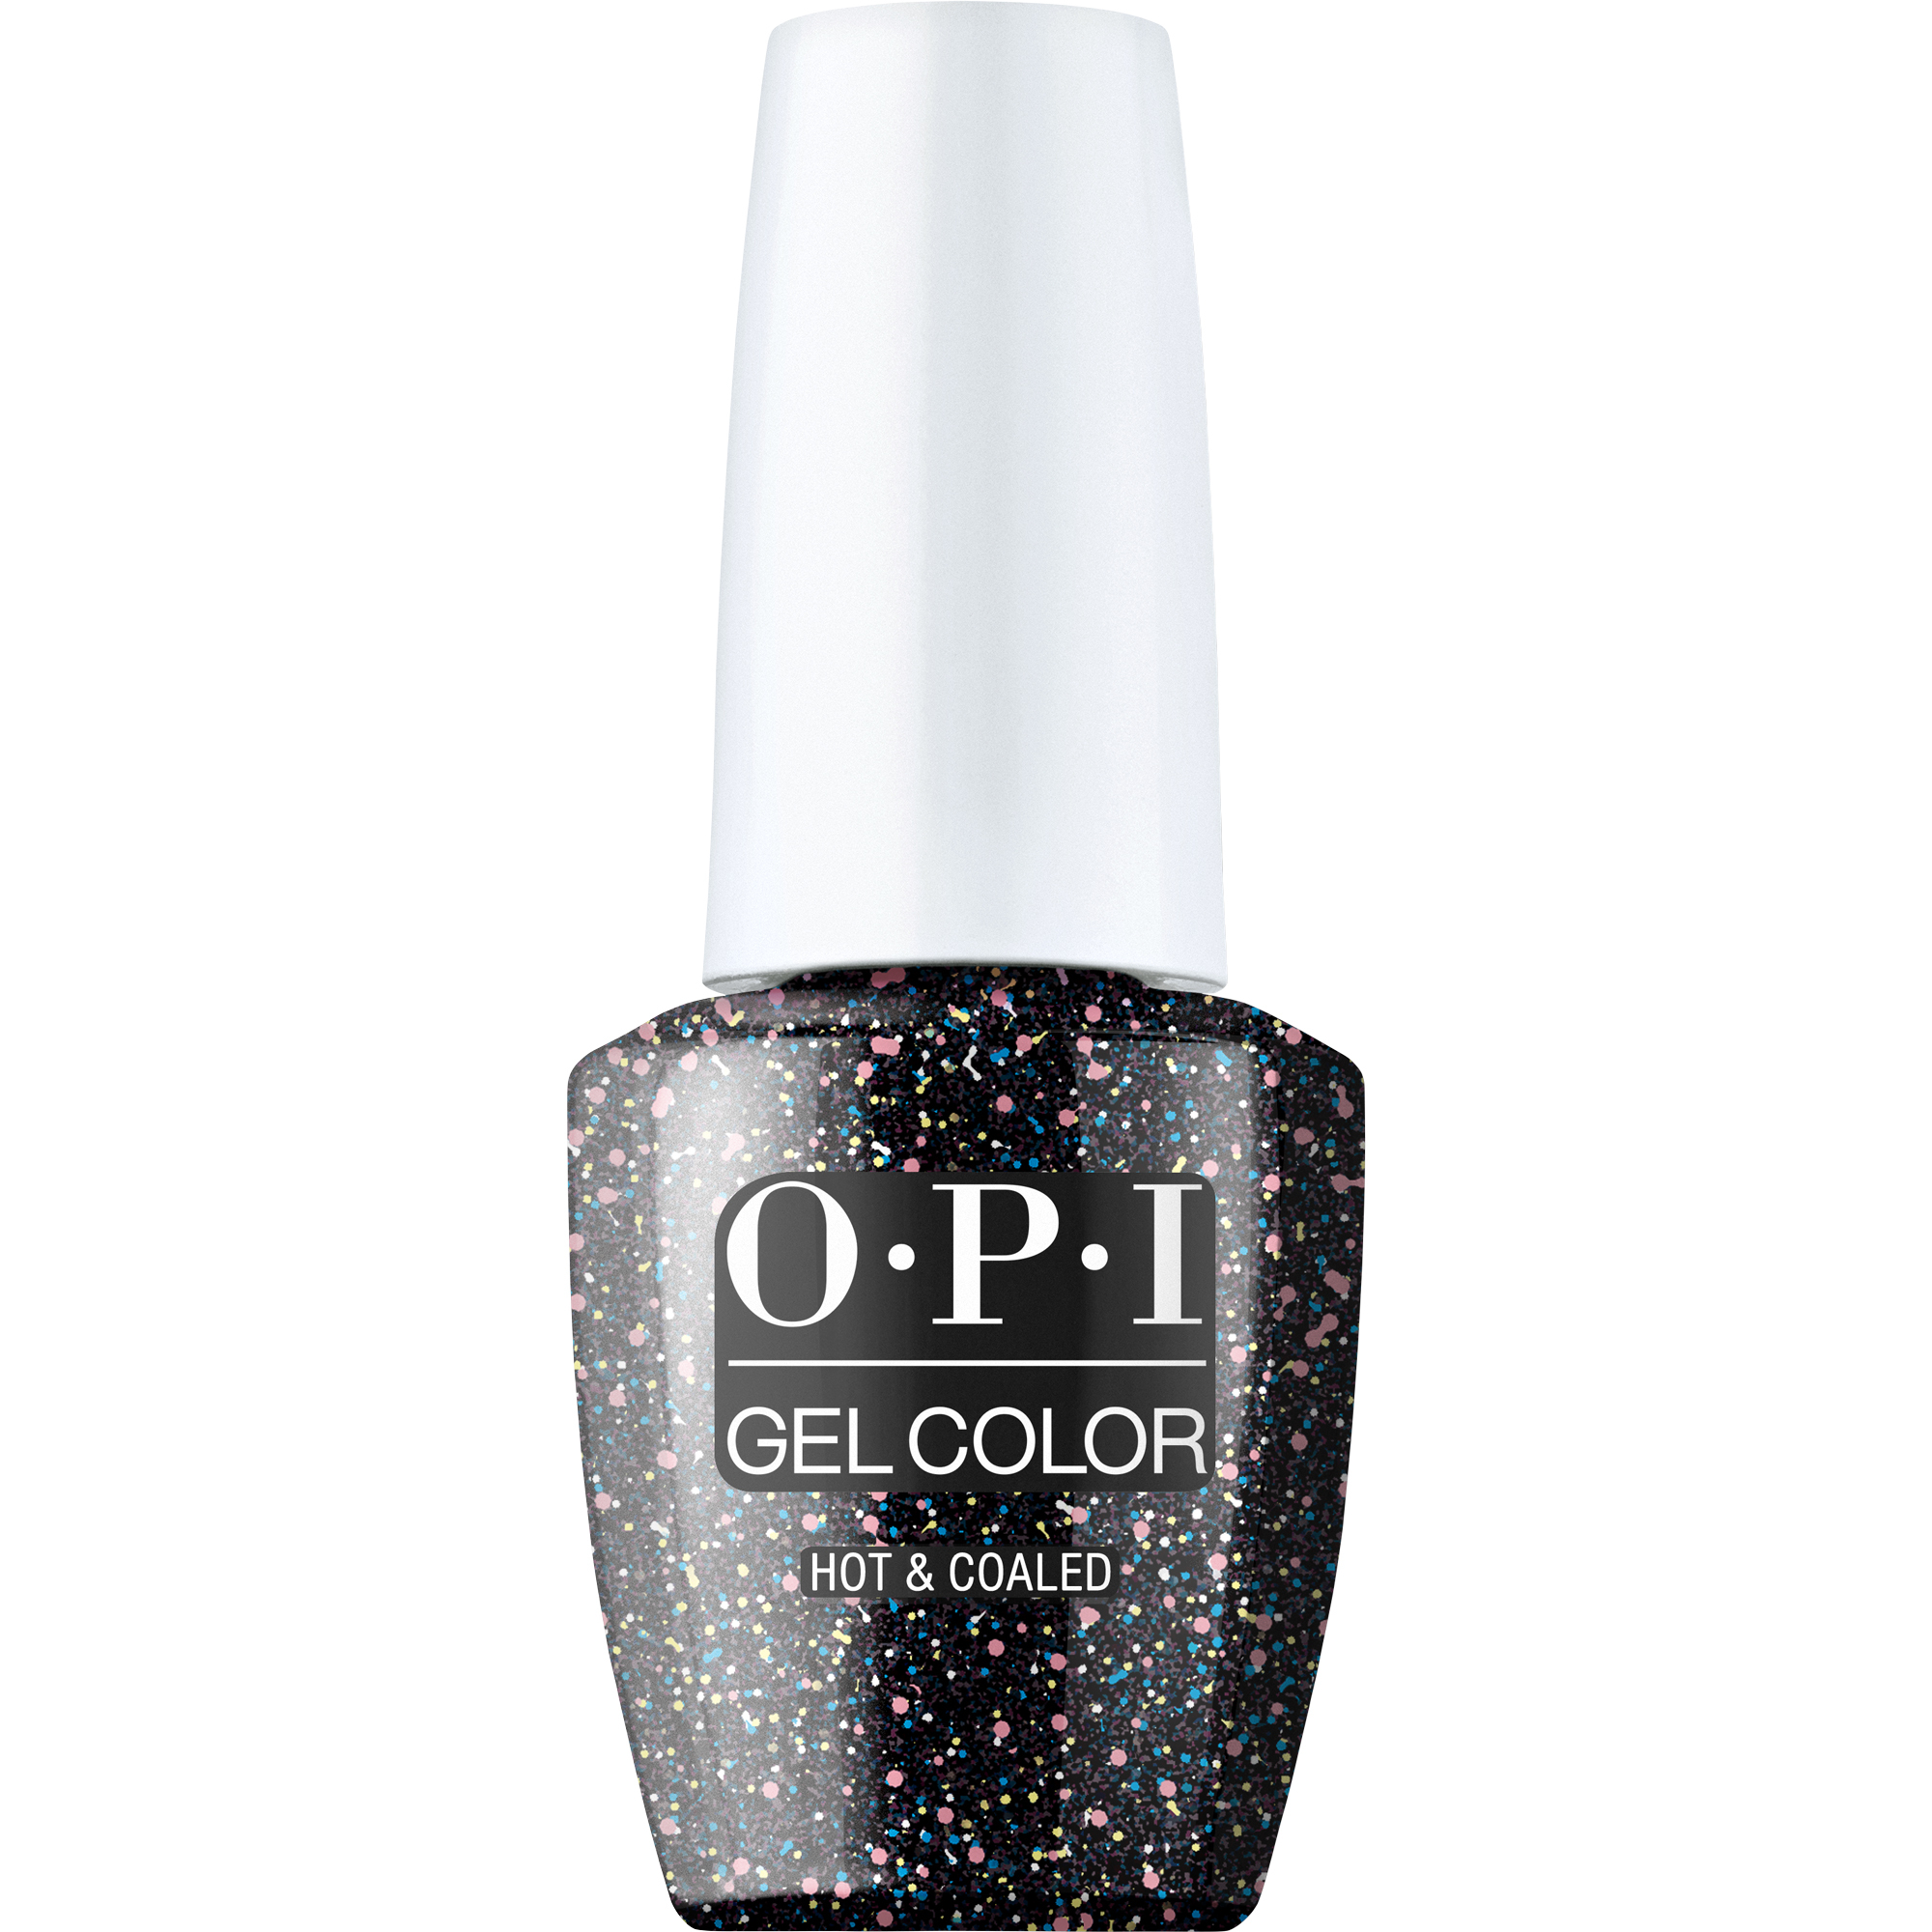 OPI Gel Color 360 - Hot & Coaled